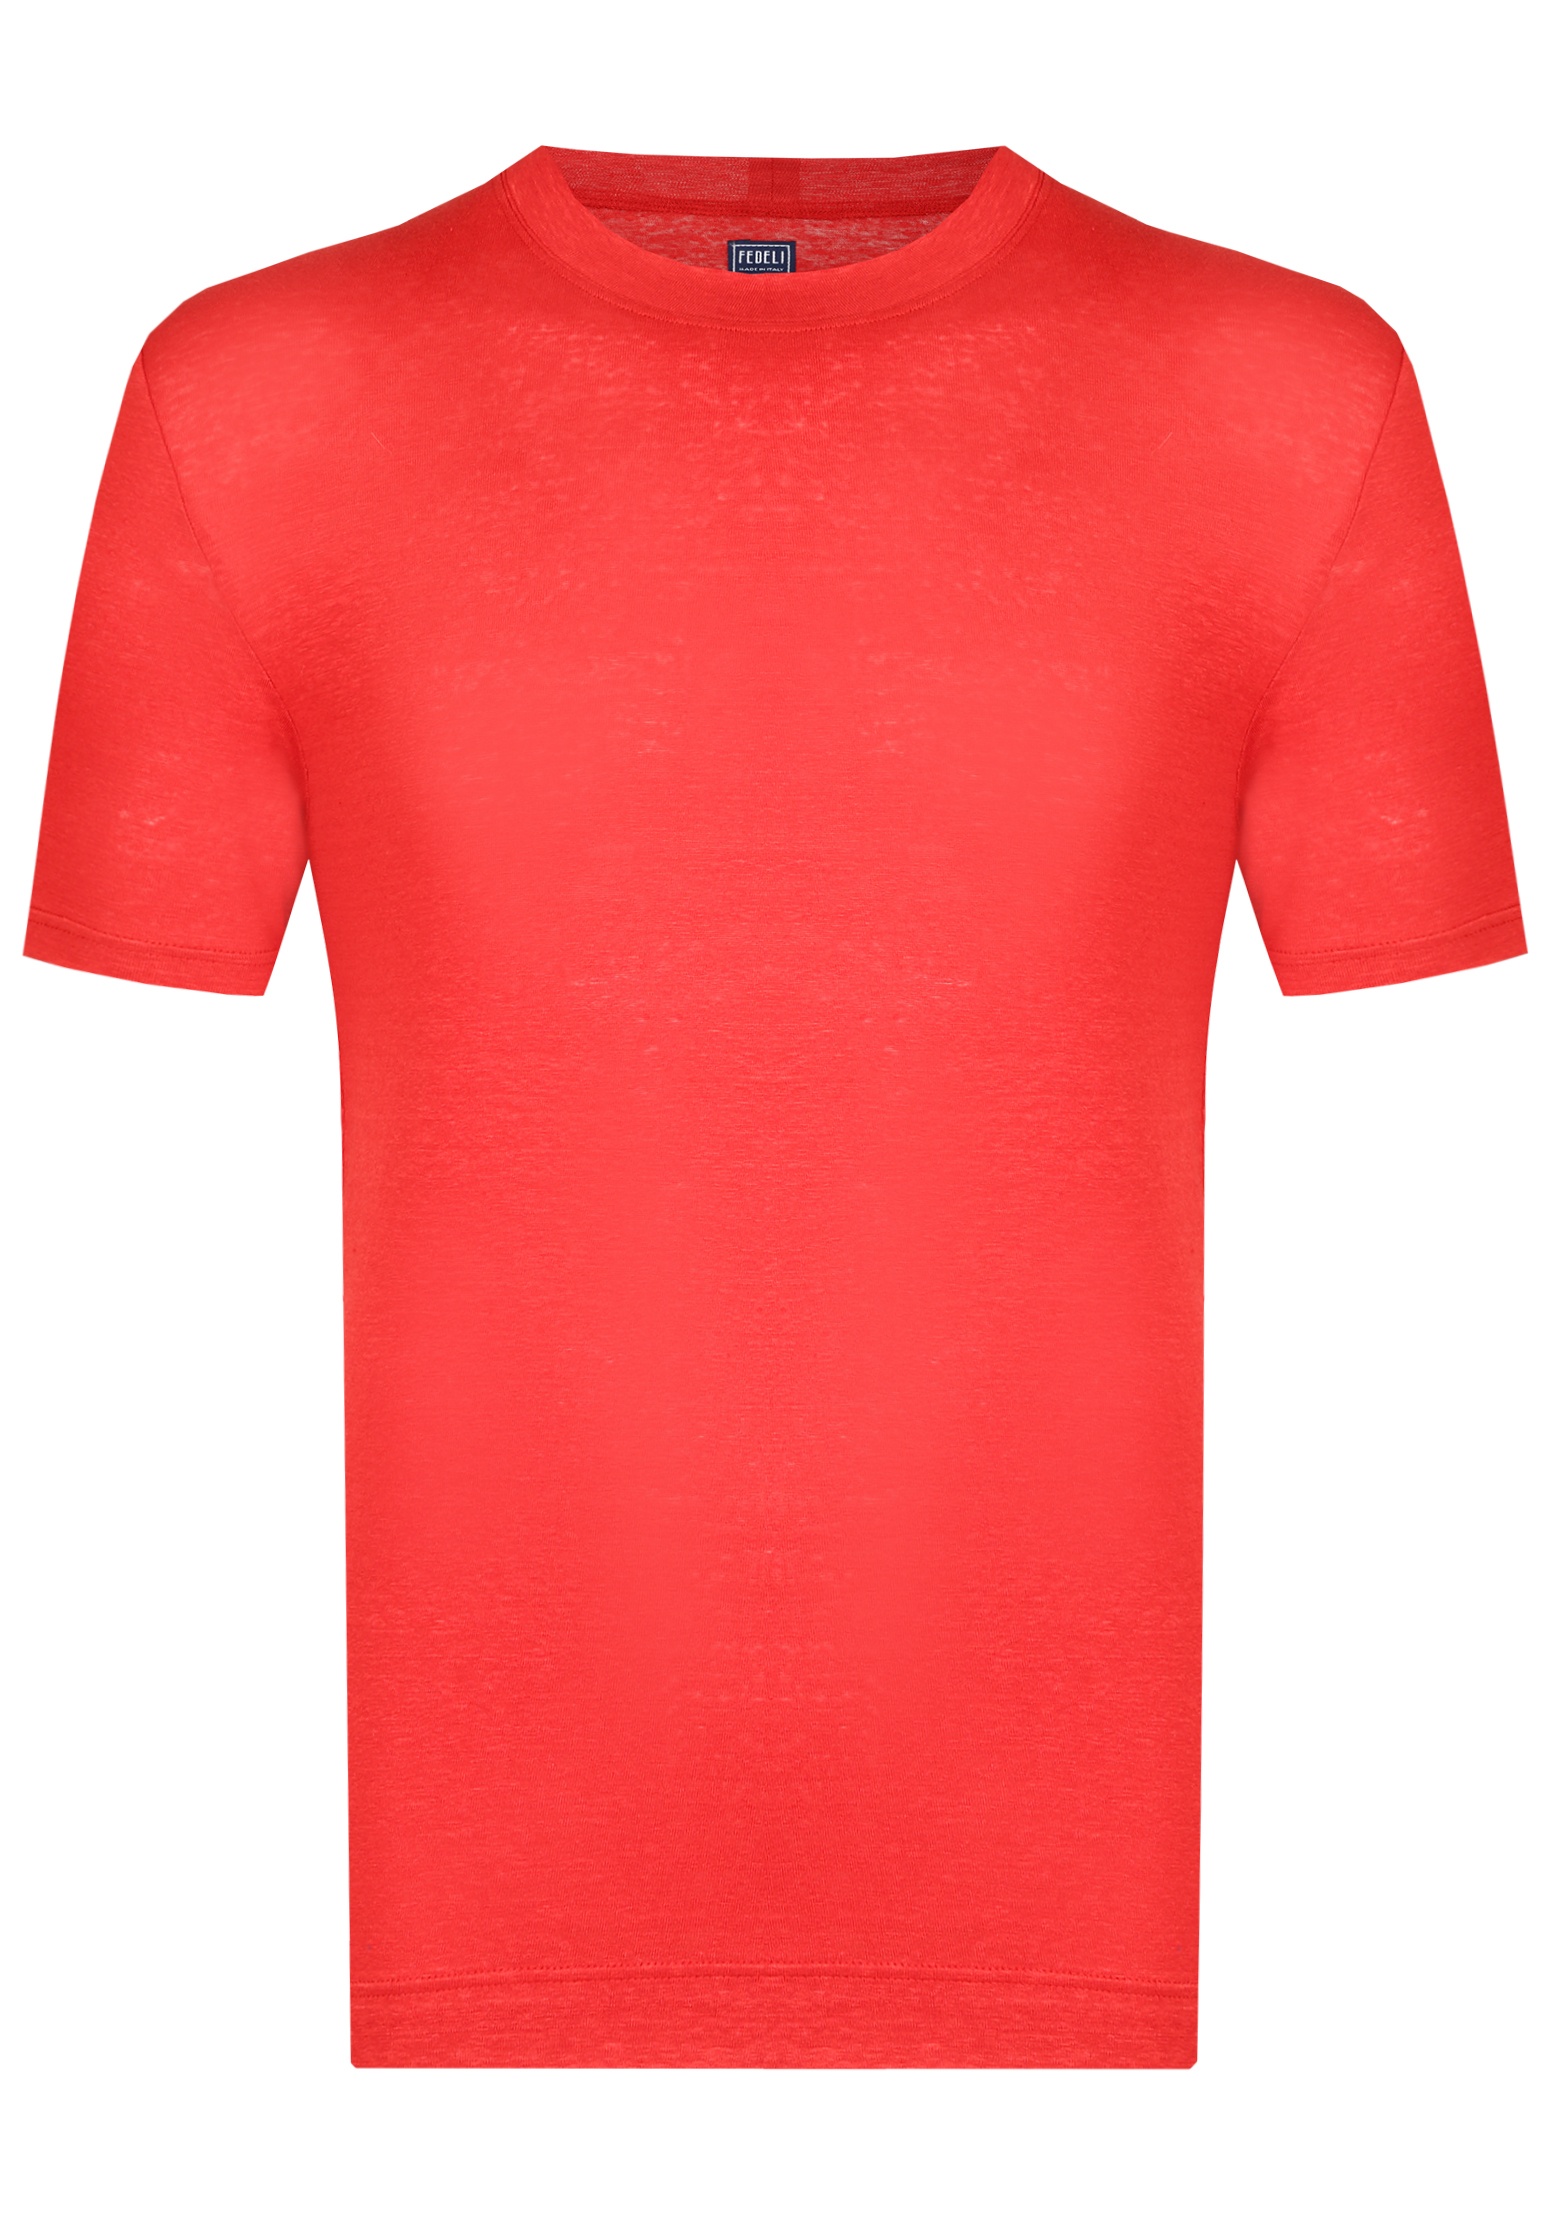 мужская футболка fedeli, красная